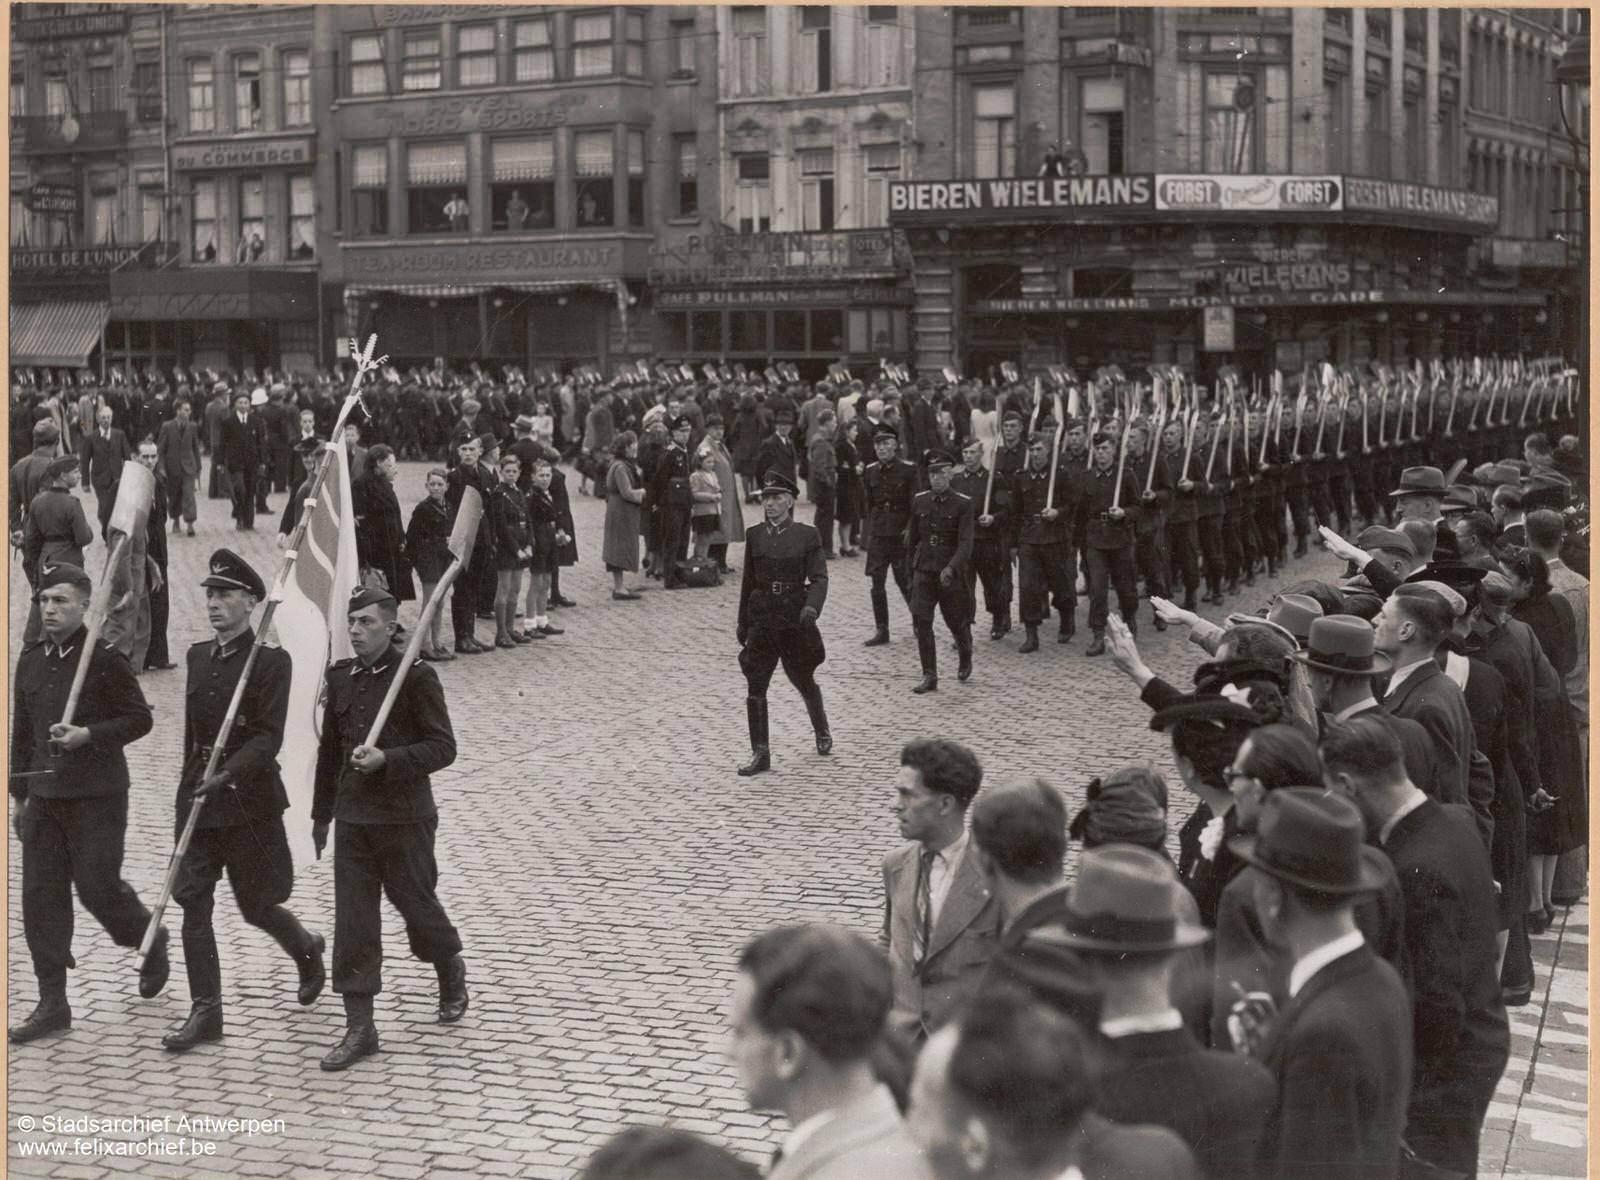 Antwerpen im Zweiten Weltkrieg